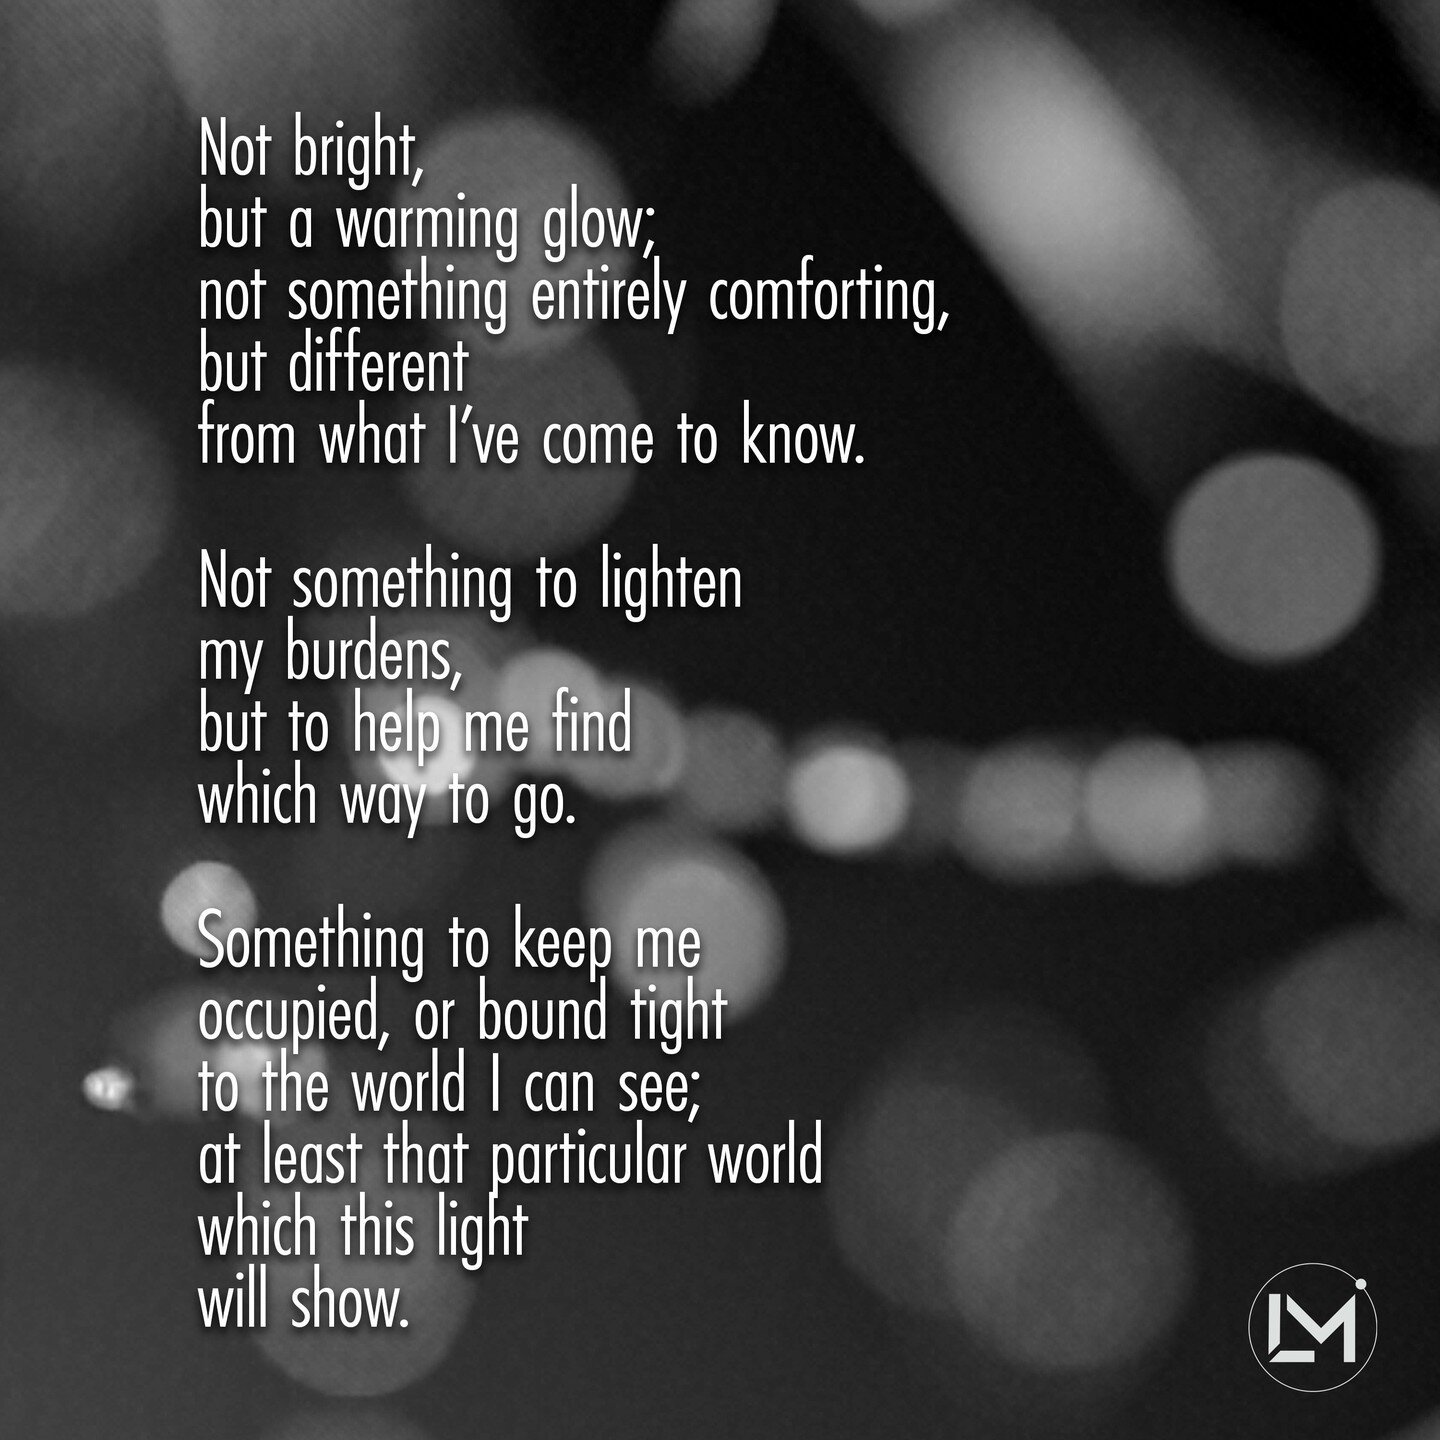 Untitled 91

- - - - - - - - - - - - - - - - - - - - - - - - -

#loveandmadness #creativewriter #poetrylovers #poem #write #poetsclan #aestheticquote #poetry #poetrybooth #writing #words #writer #writersofinstagram
#writings #wordporn #wordgasm #poet